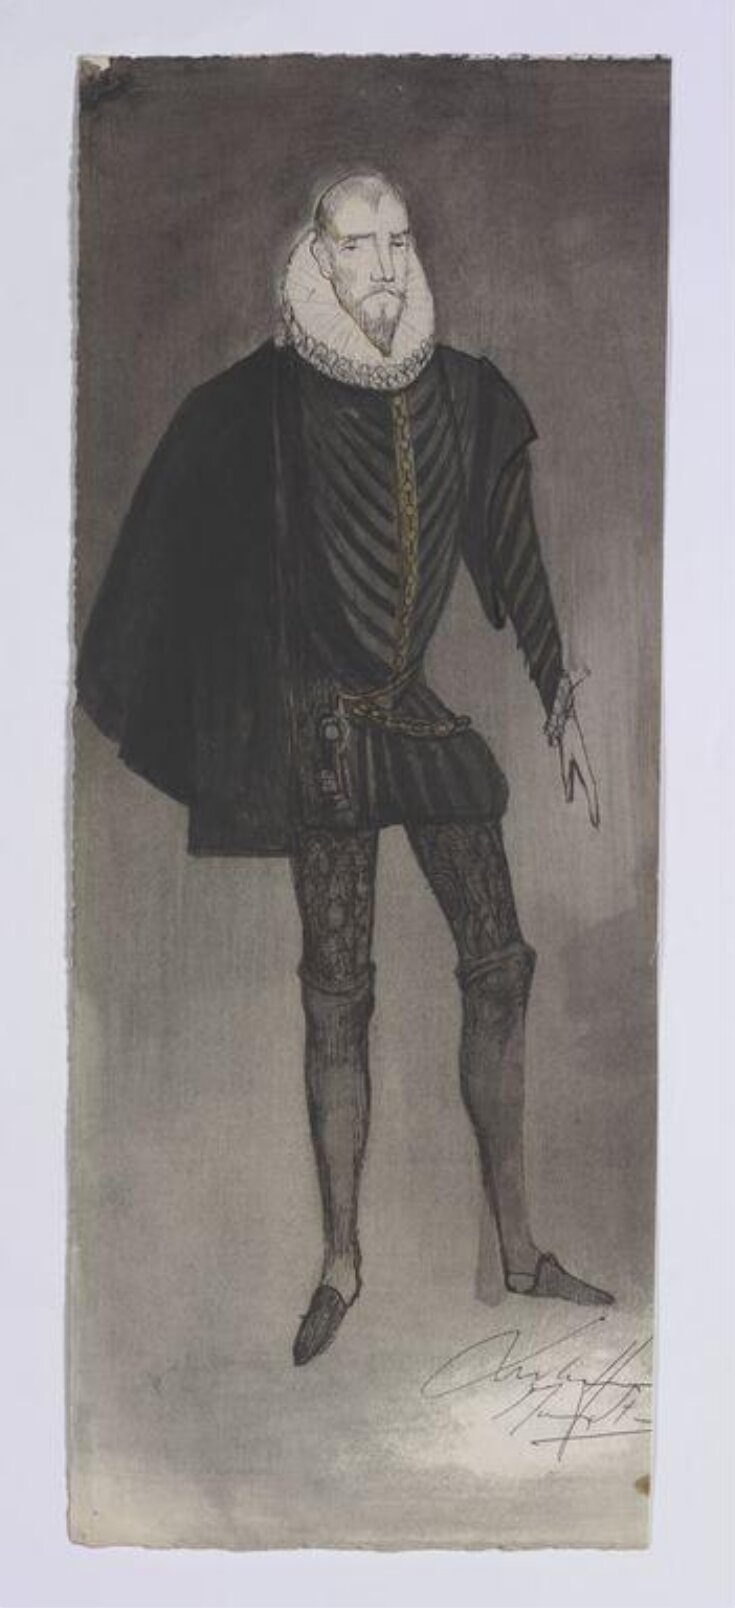 Mary Stuart image